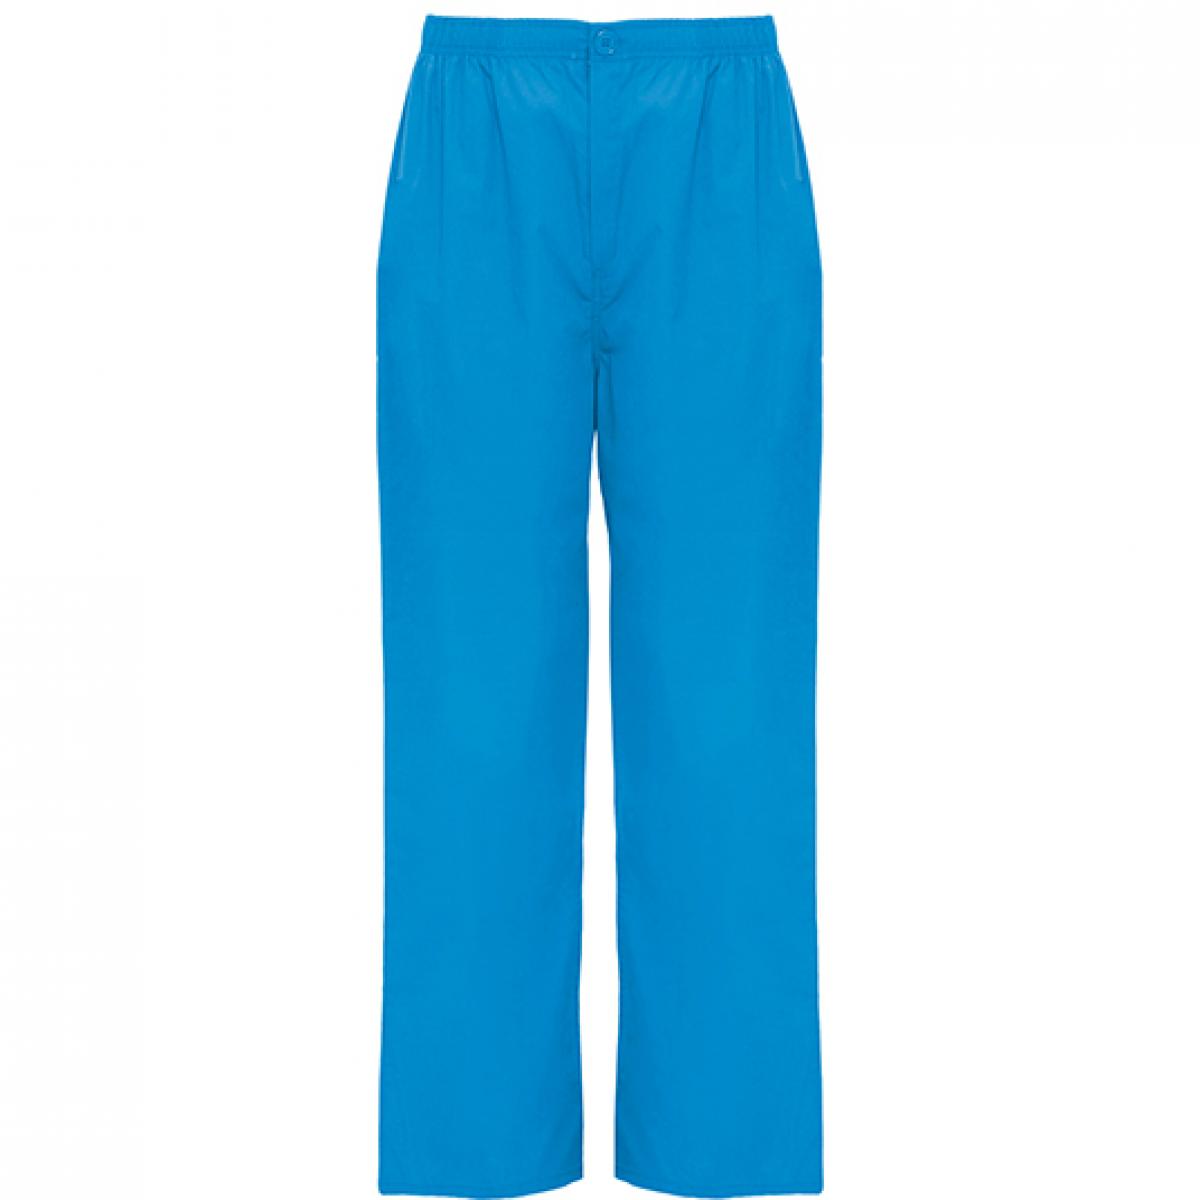 Hersteller: Roly Workwear Herstellernummer: PA9097 Artikelbezeichnung: Vademecum Pull on trousers - Pfegerhose Farbe: Blue Danube 110